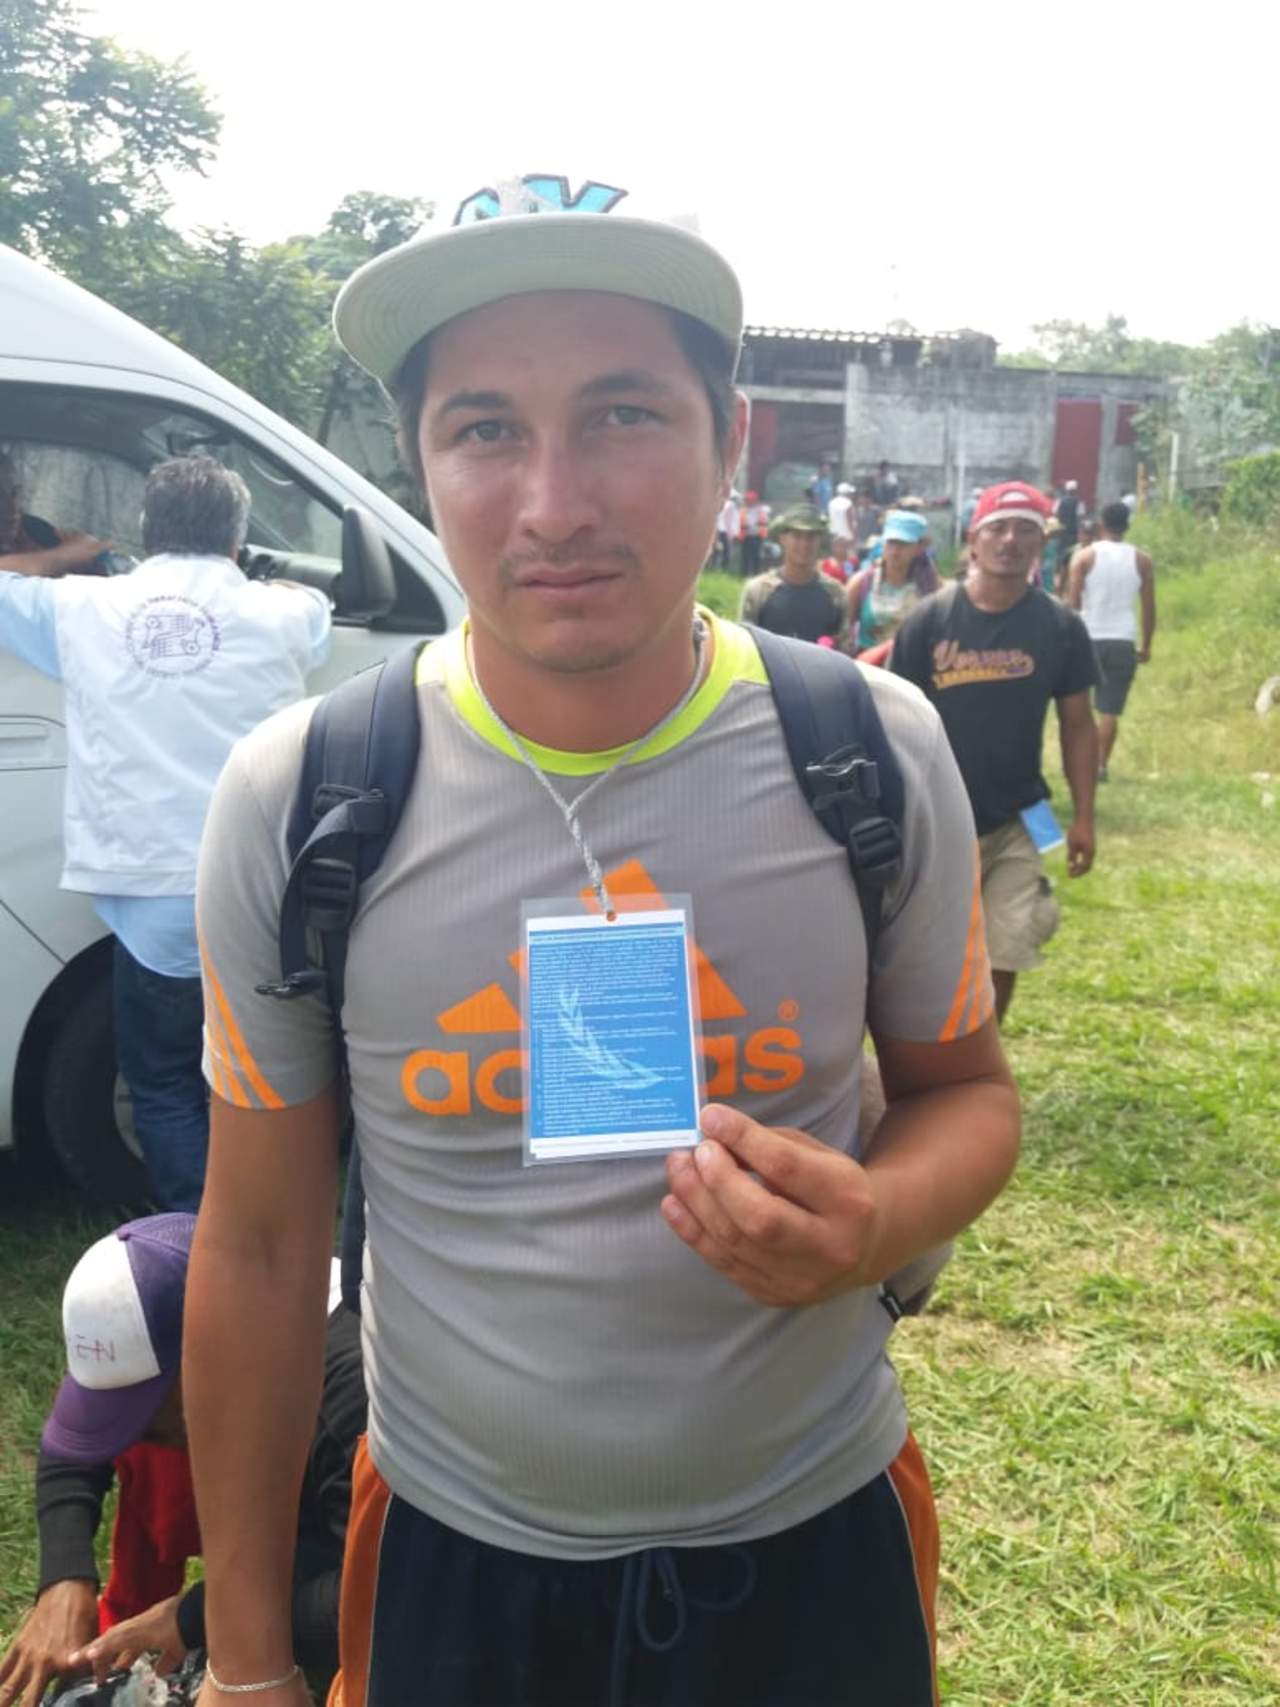 Un migrante hondureño muestra la tarjeta que un miembros del servicio humanitario de Naciones Unidas le entregó sobre sus derechos como migrante. (Cortesía: Hans.Maximo Musielik)

